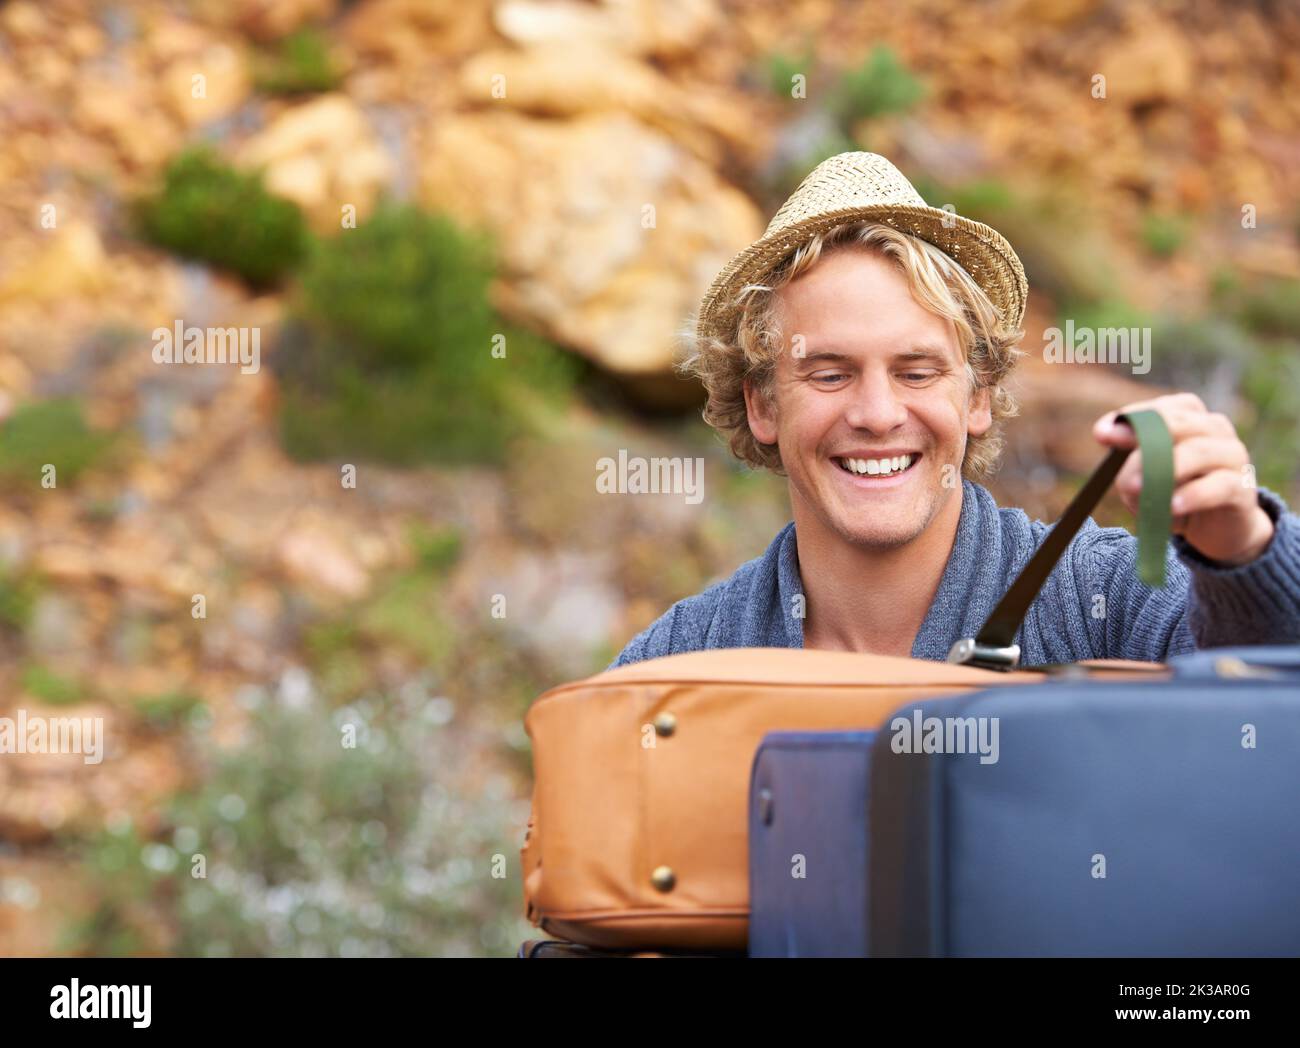 Sein Gepäck ausladen. Ein blonder Mann entlädt sein Gepäck auf einem Campingausflug. Stockfoto